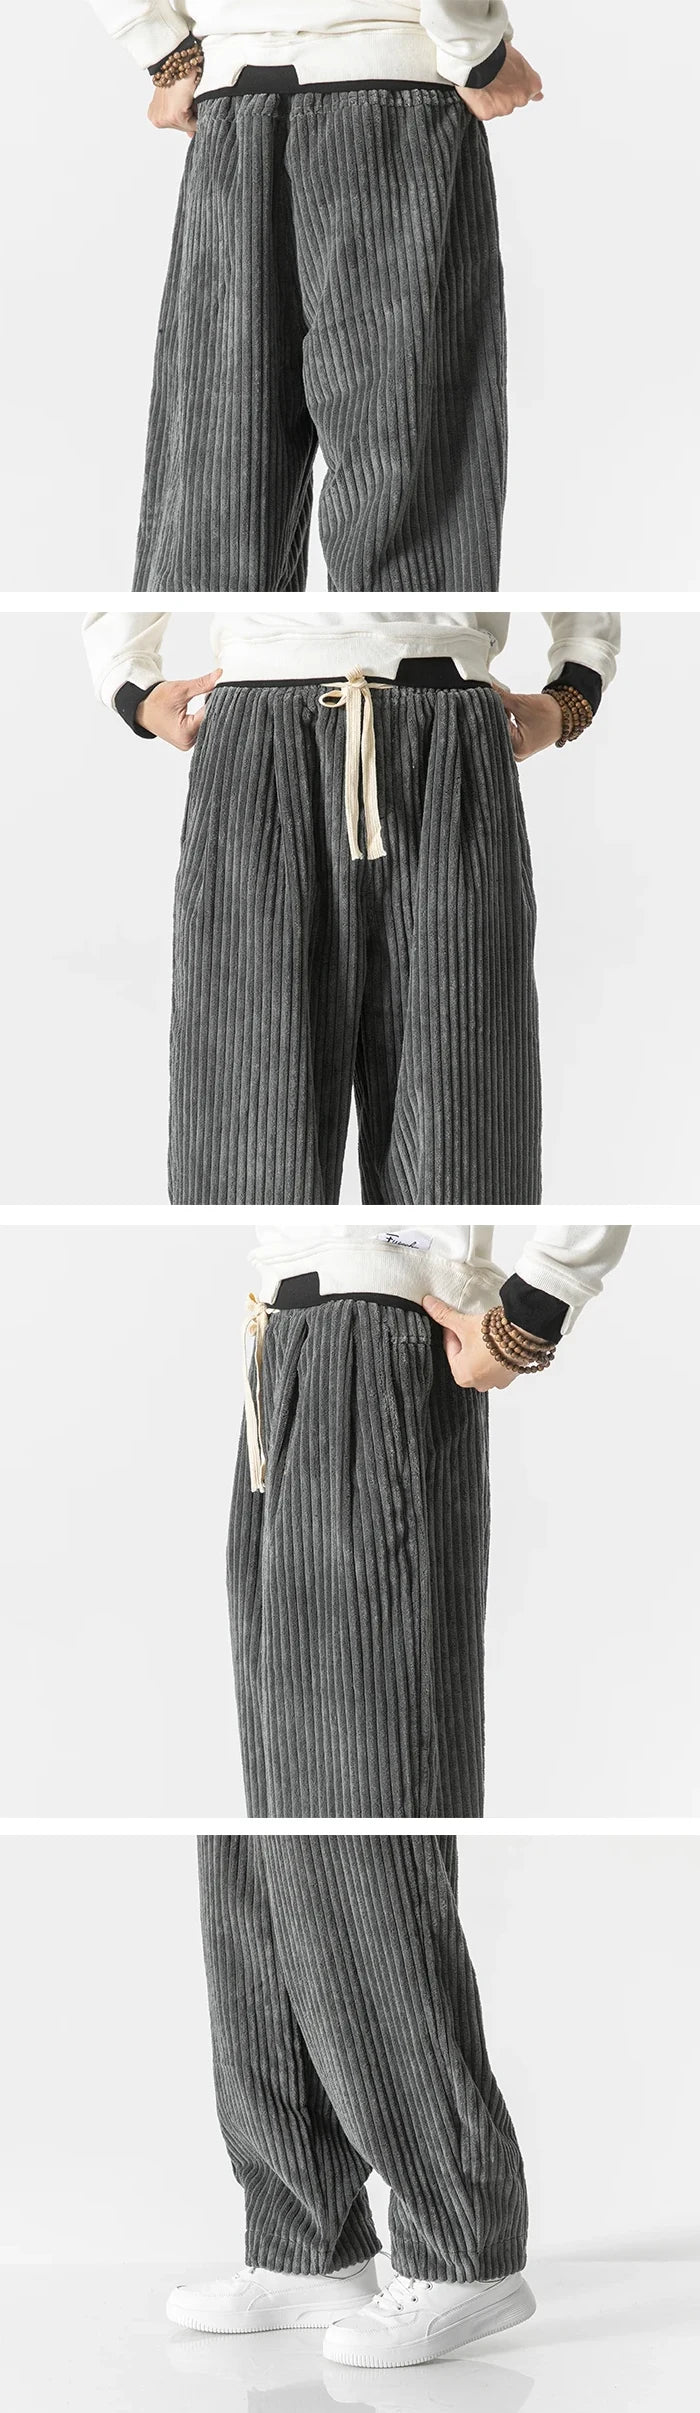 Harem pants for men "Tajimi" in grey color